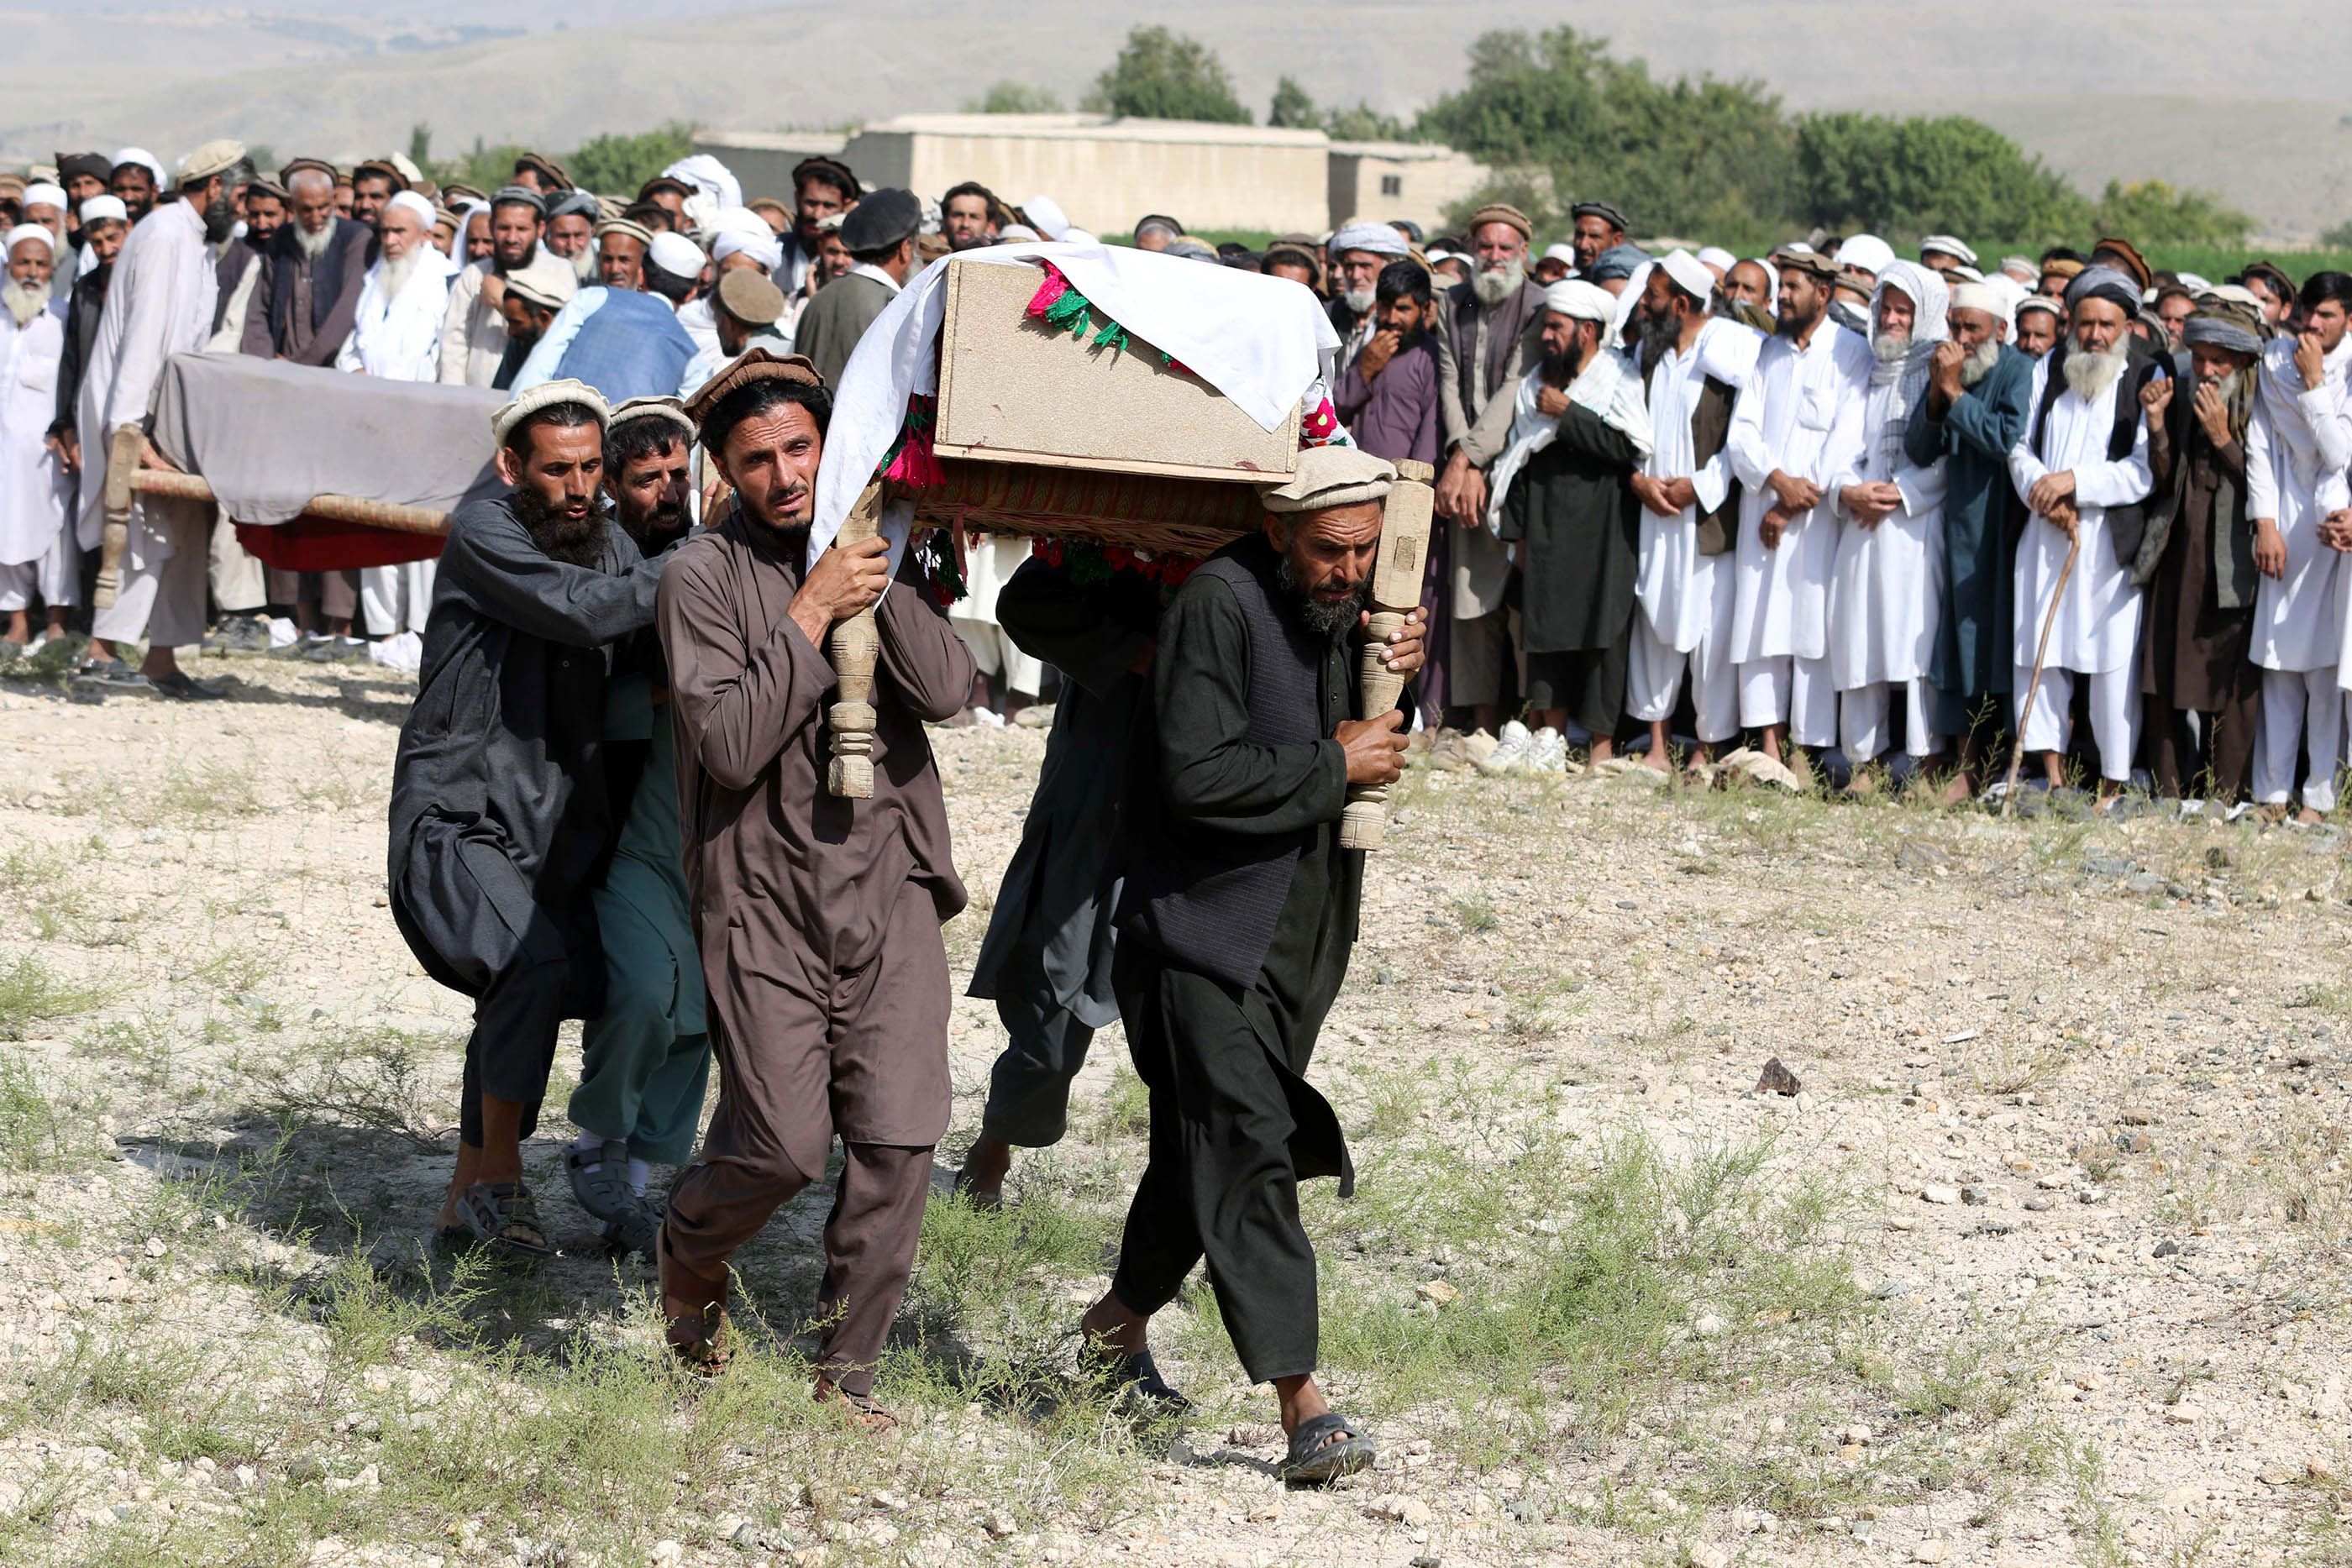 us drone strike afghanistan farmers